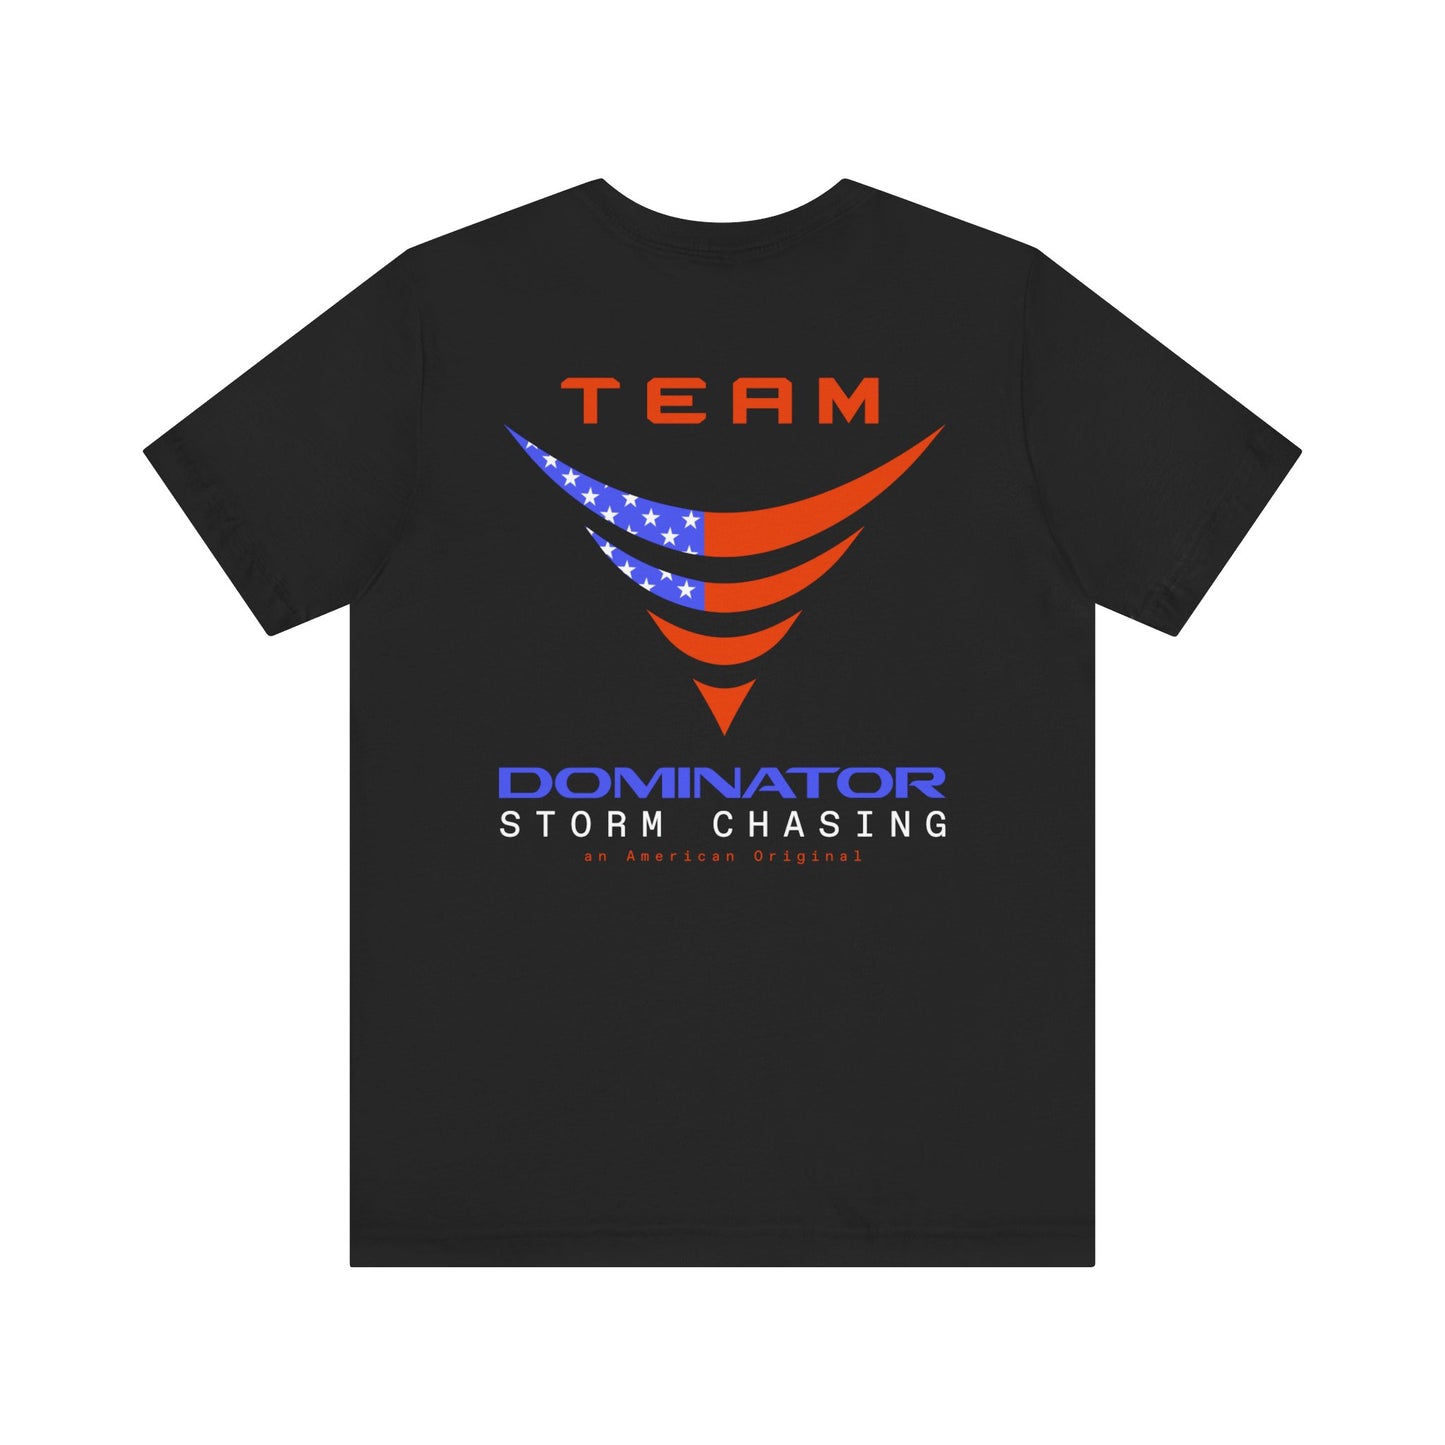 Team Dominator - American Original